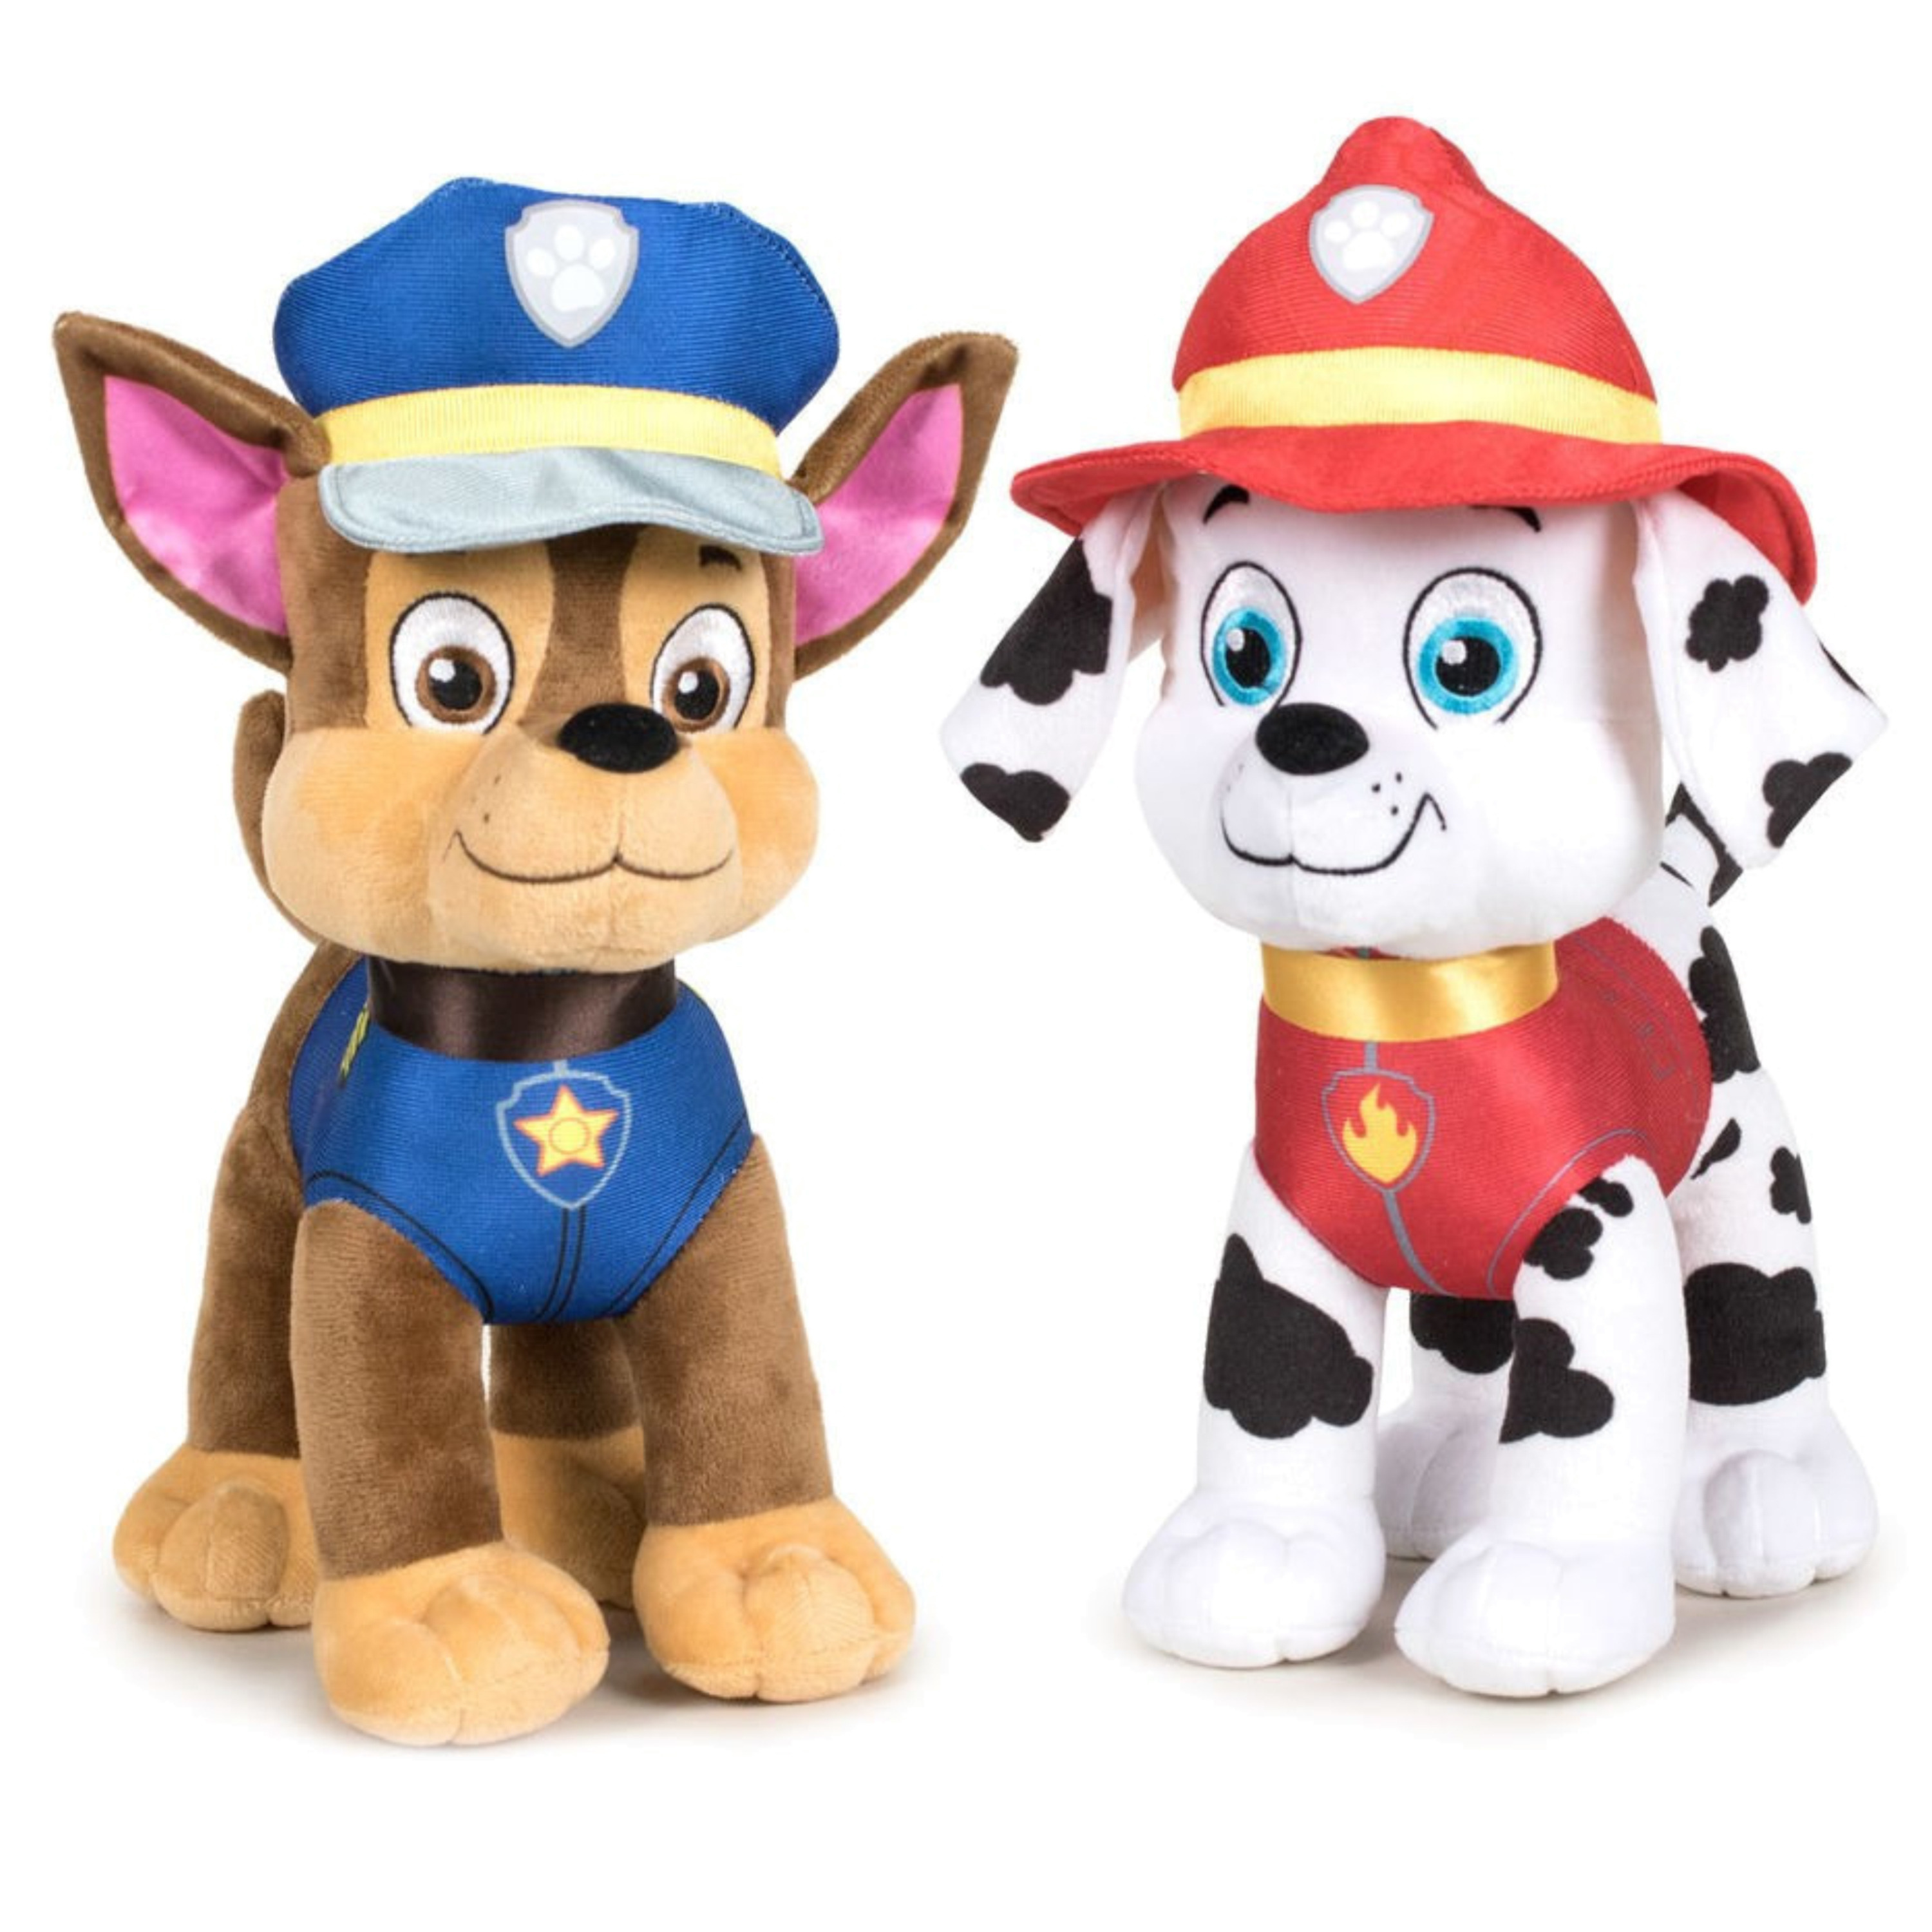 Paw Patrol figuren speelgoed knuffels set van 2x karakters Marshall en Chase 19 cm -